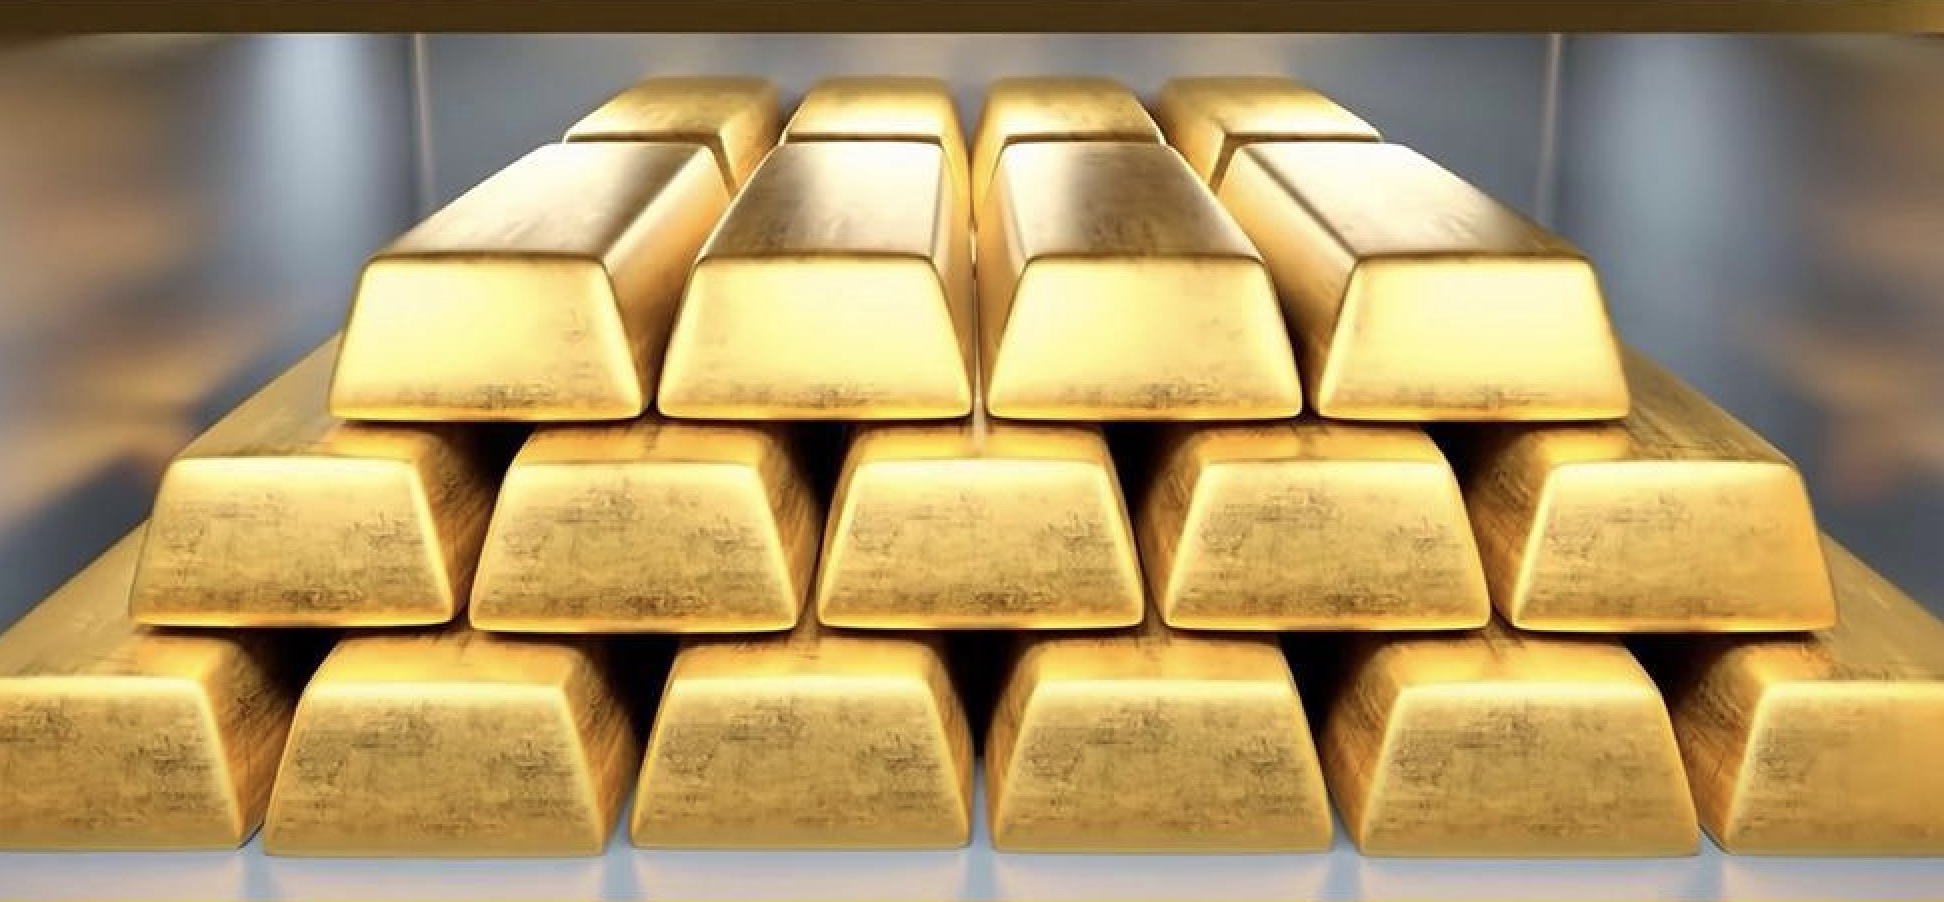 คำเตือนการซื้อขายทองคำ: ความตึงเครียดในตะวันออกกลางช่วยให้ราคาทองคำโพสต์เชิงบวกติดต่อกัน 5 สัปดาห์ และนักวิเคราะห์ 70% มีความมั่นใจในแนวโน้มตลาด